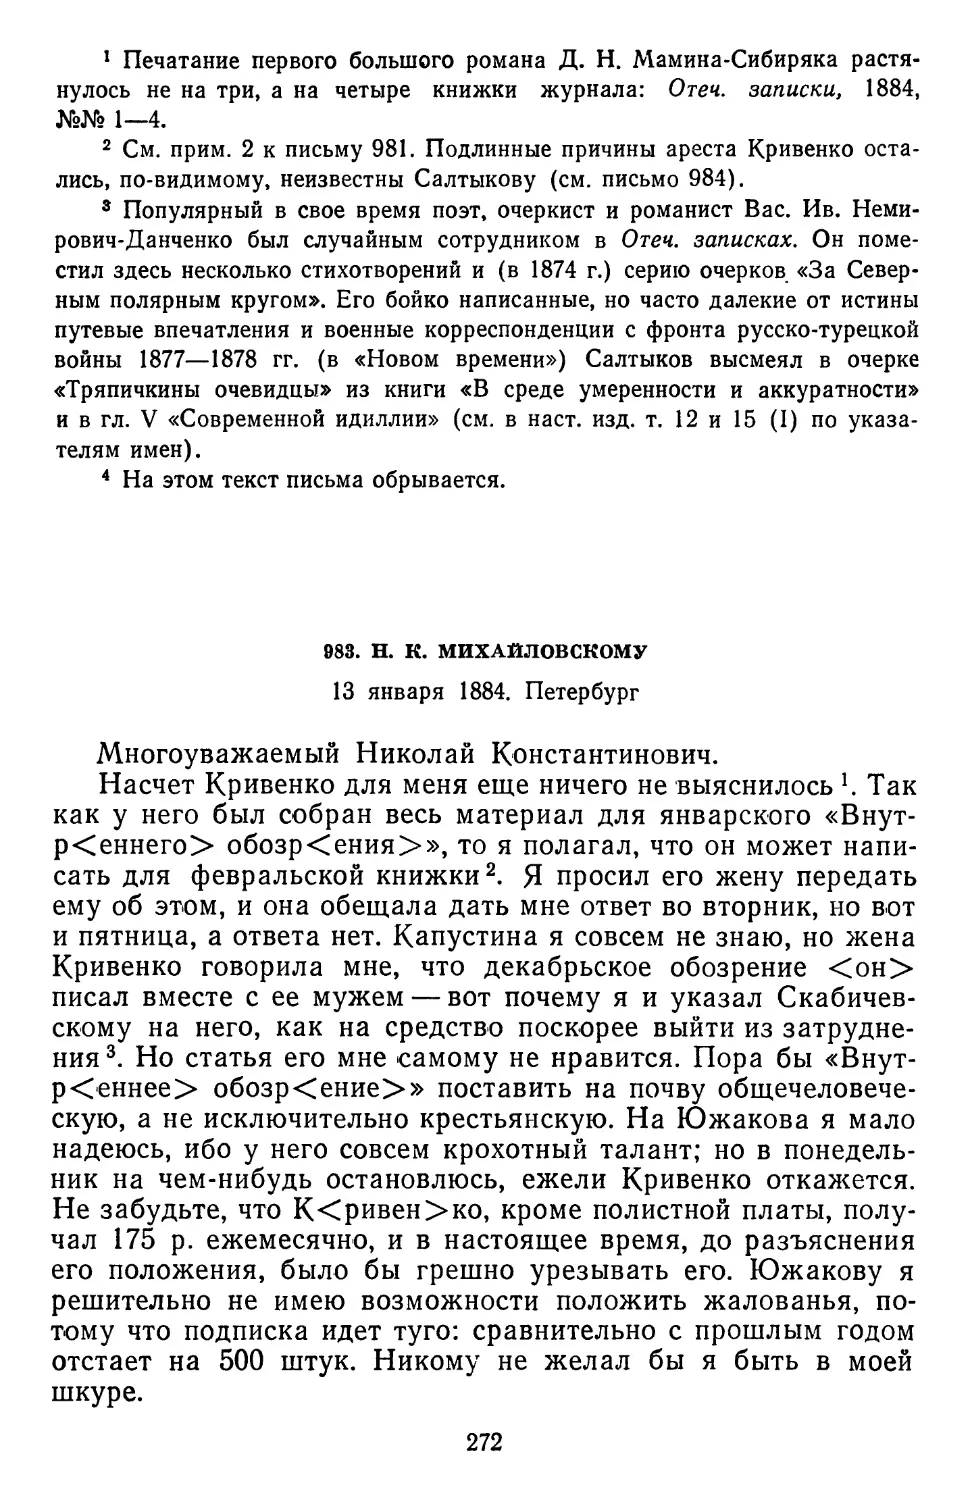 983.Н. К. Михайловскому. 13 января 1884. Петербург